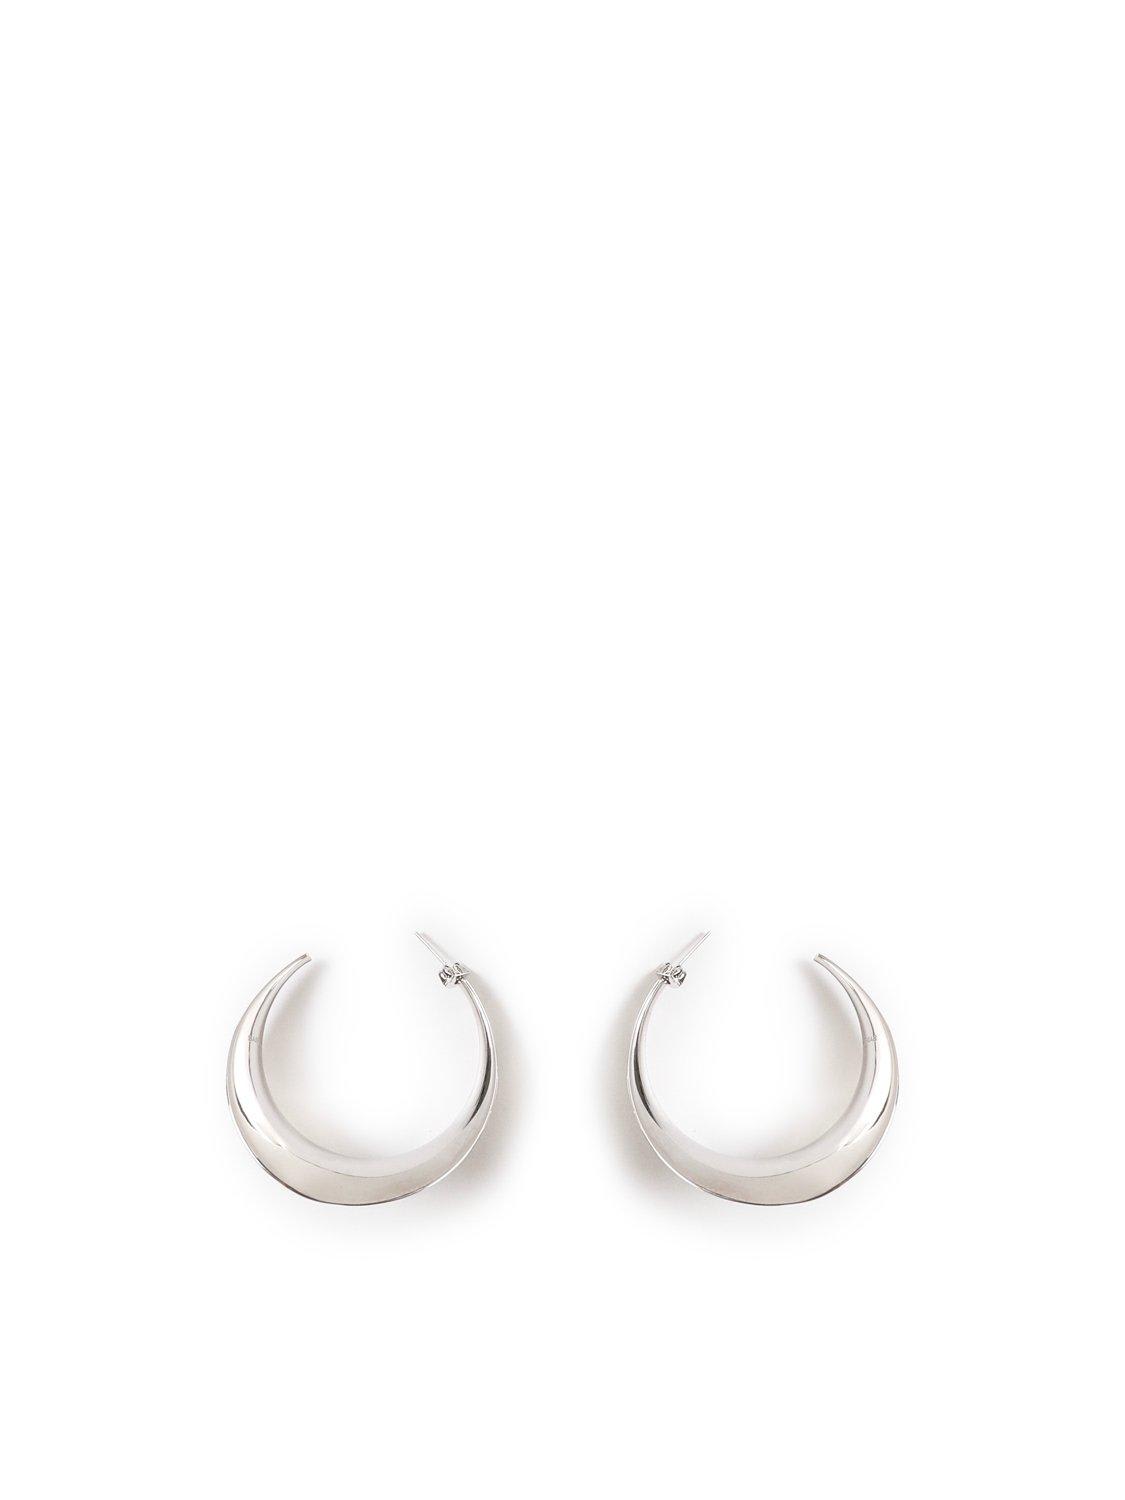 Curved Hoop Earrings